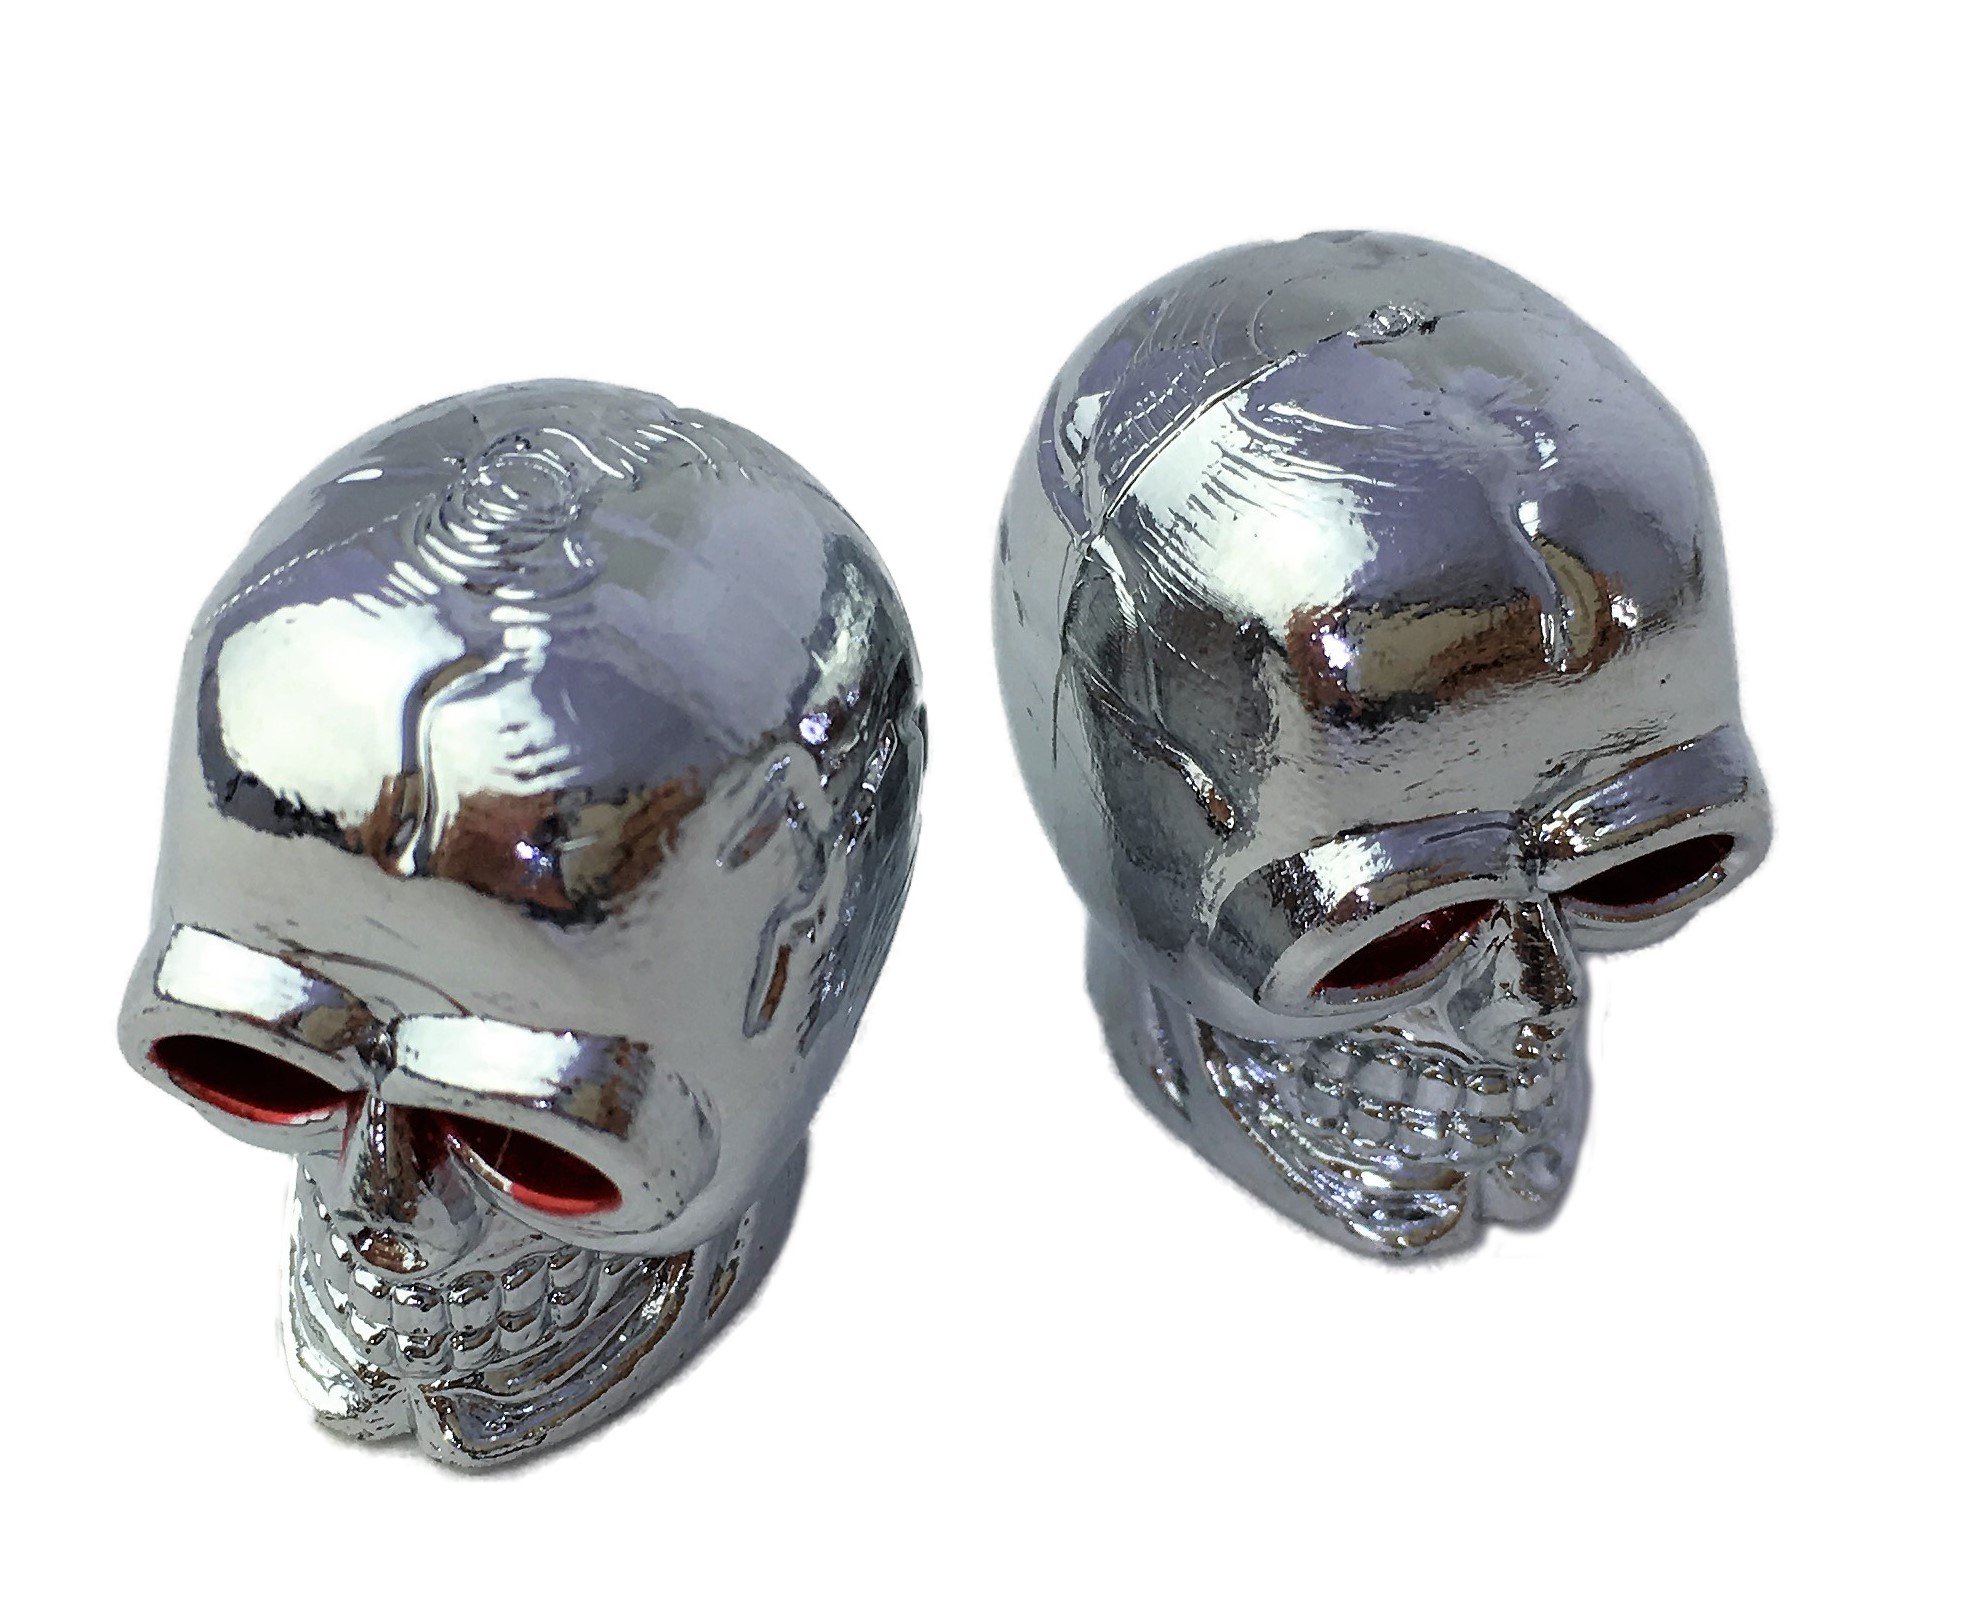 Ventilkappen Skull-Totenkopf, verchromt. Toller Custom-Look